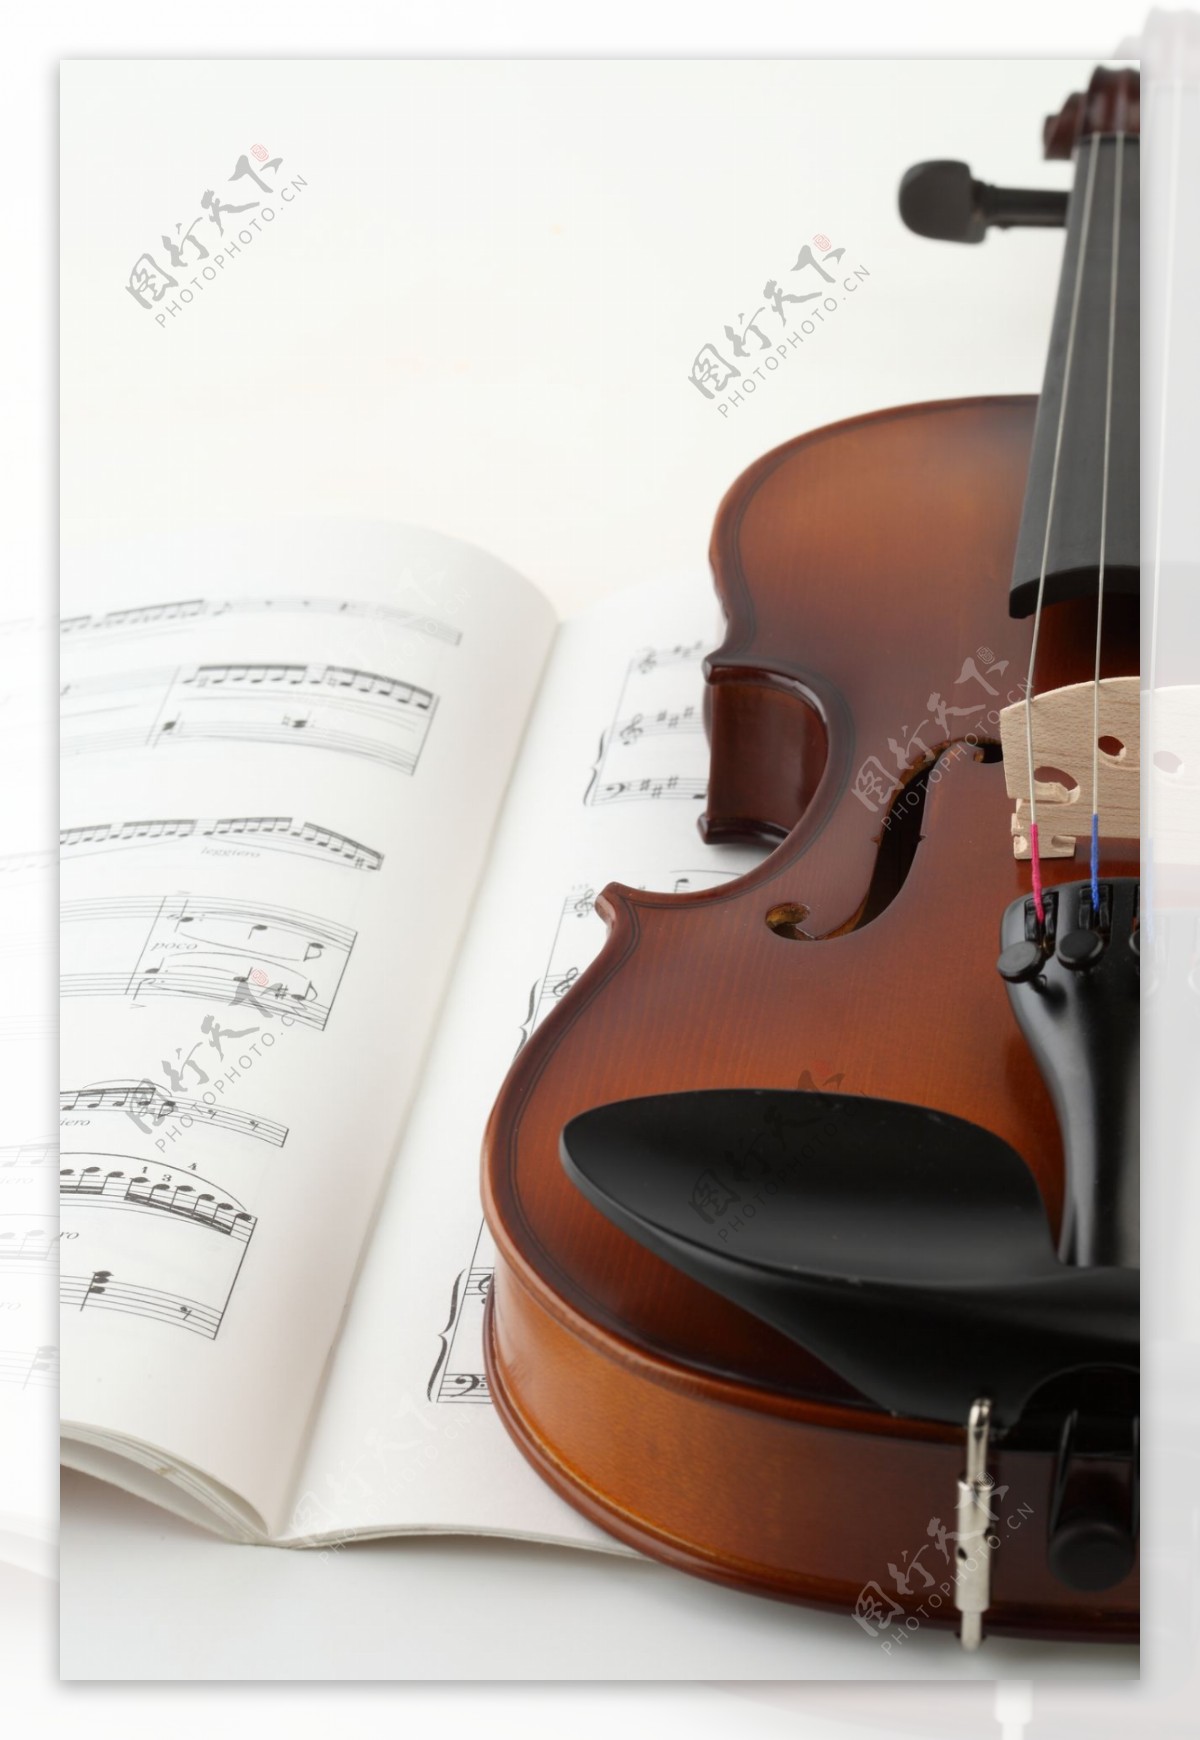 小提琴与音符图片